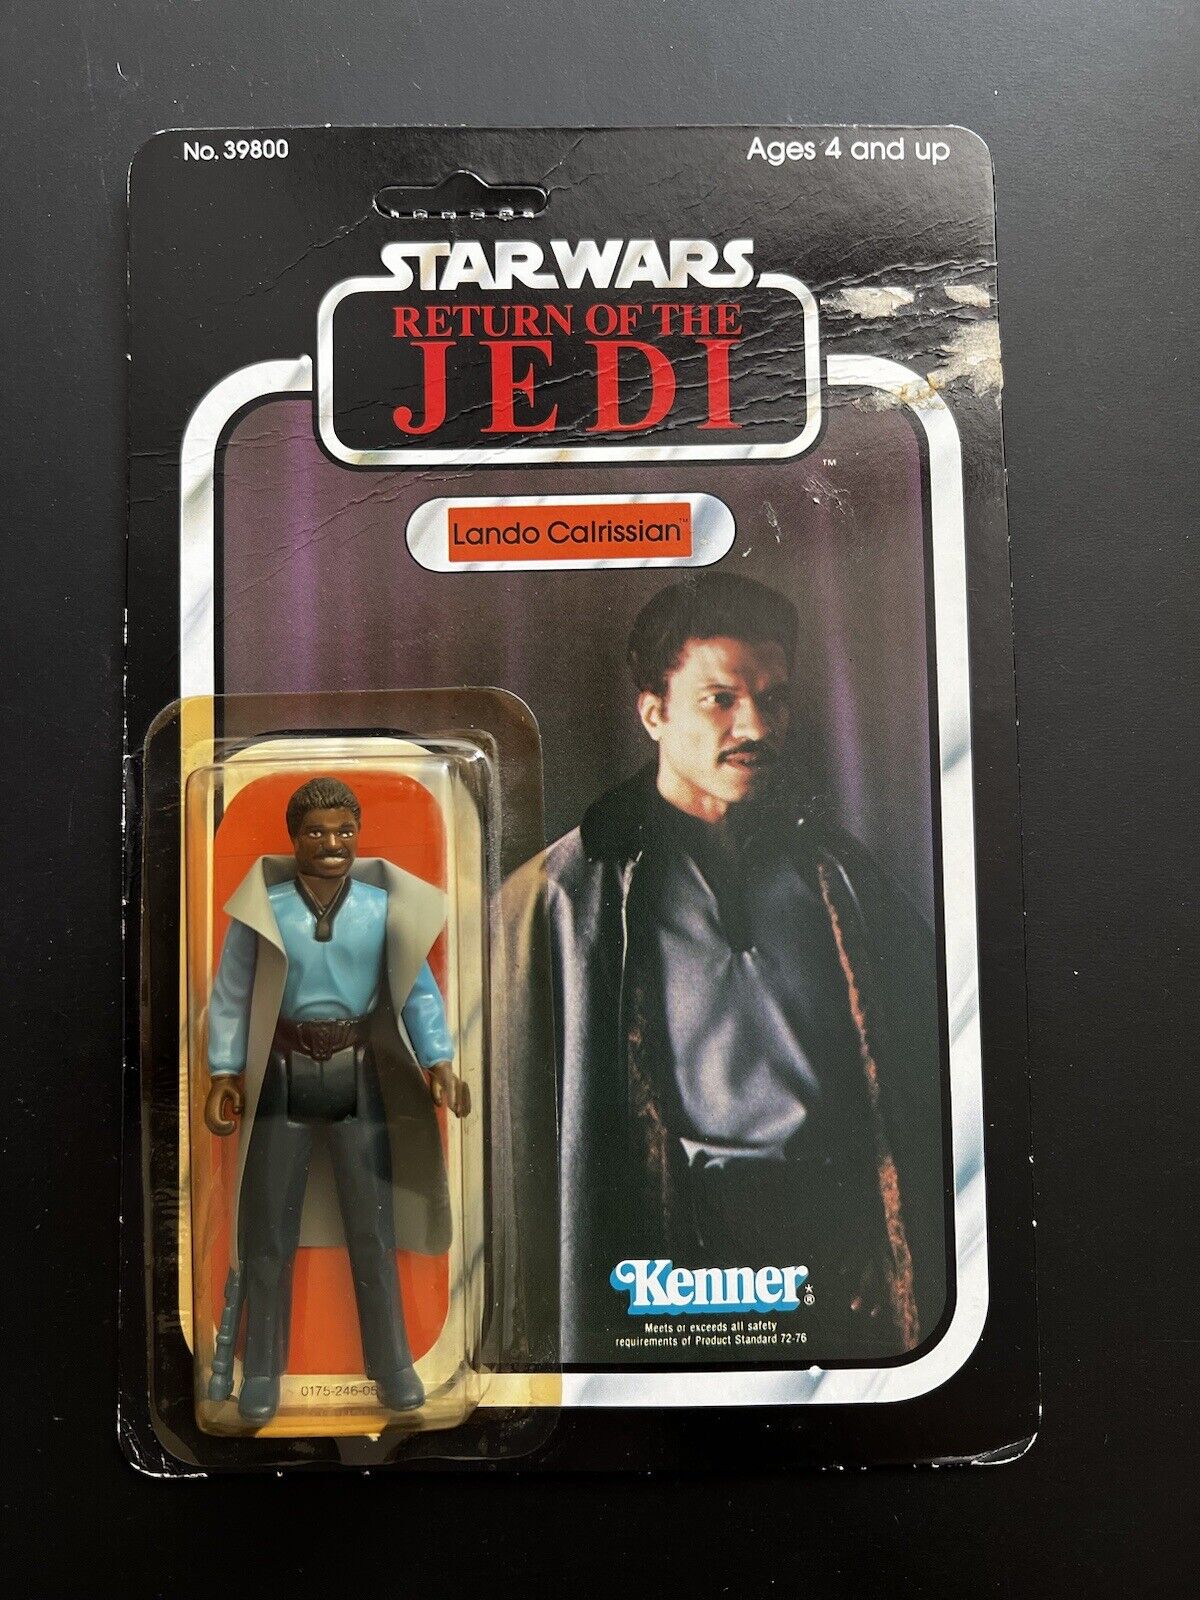 Lando Calrissian sold